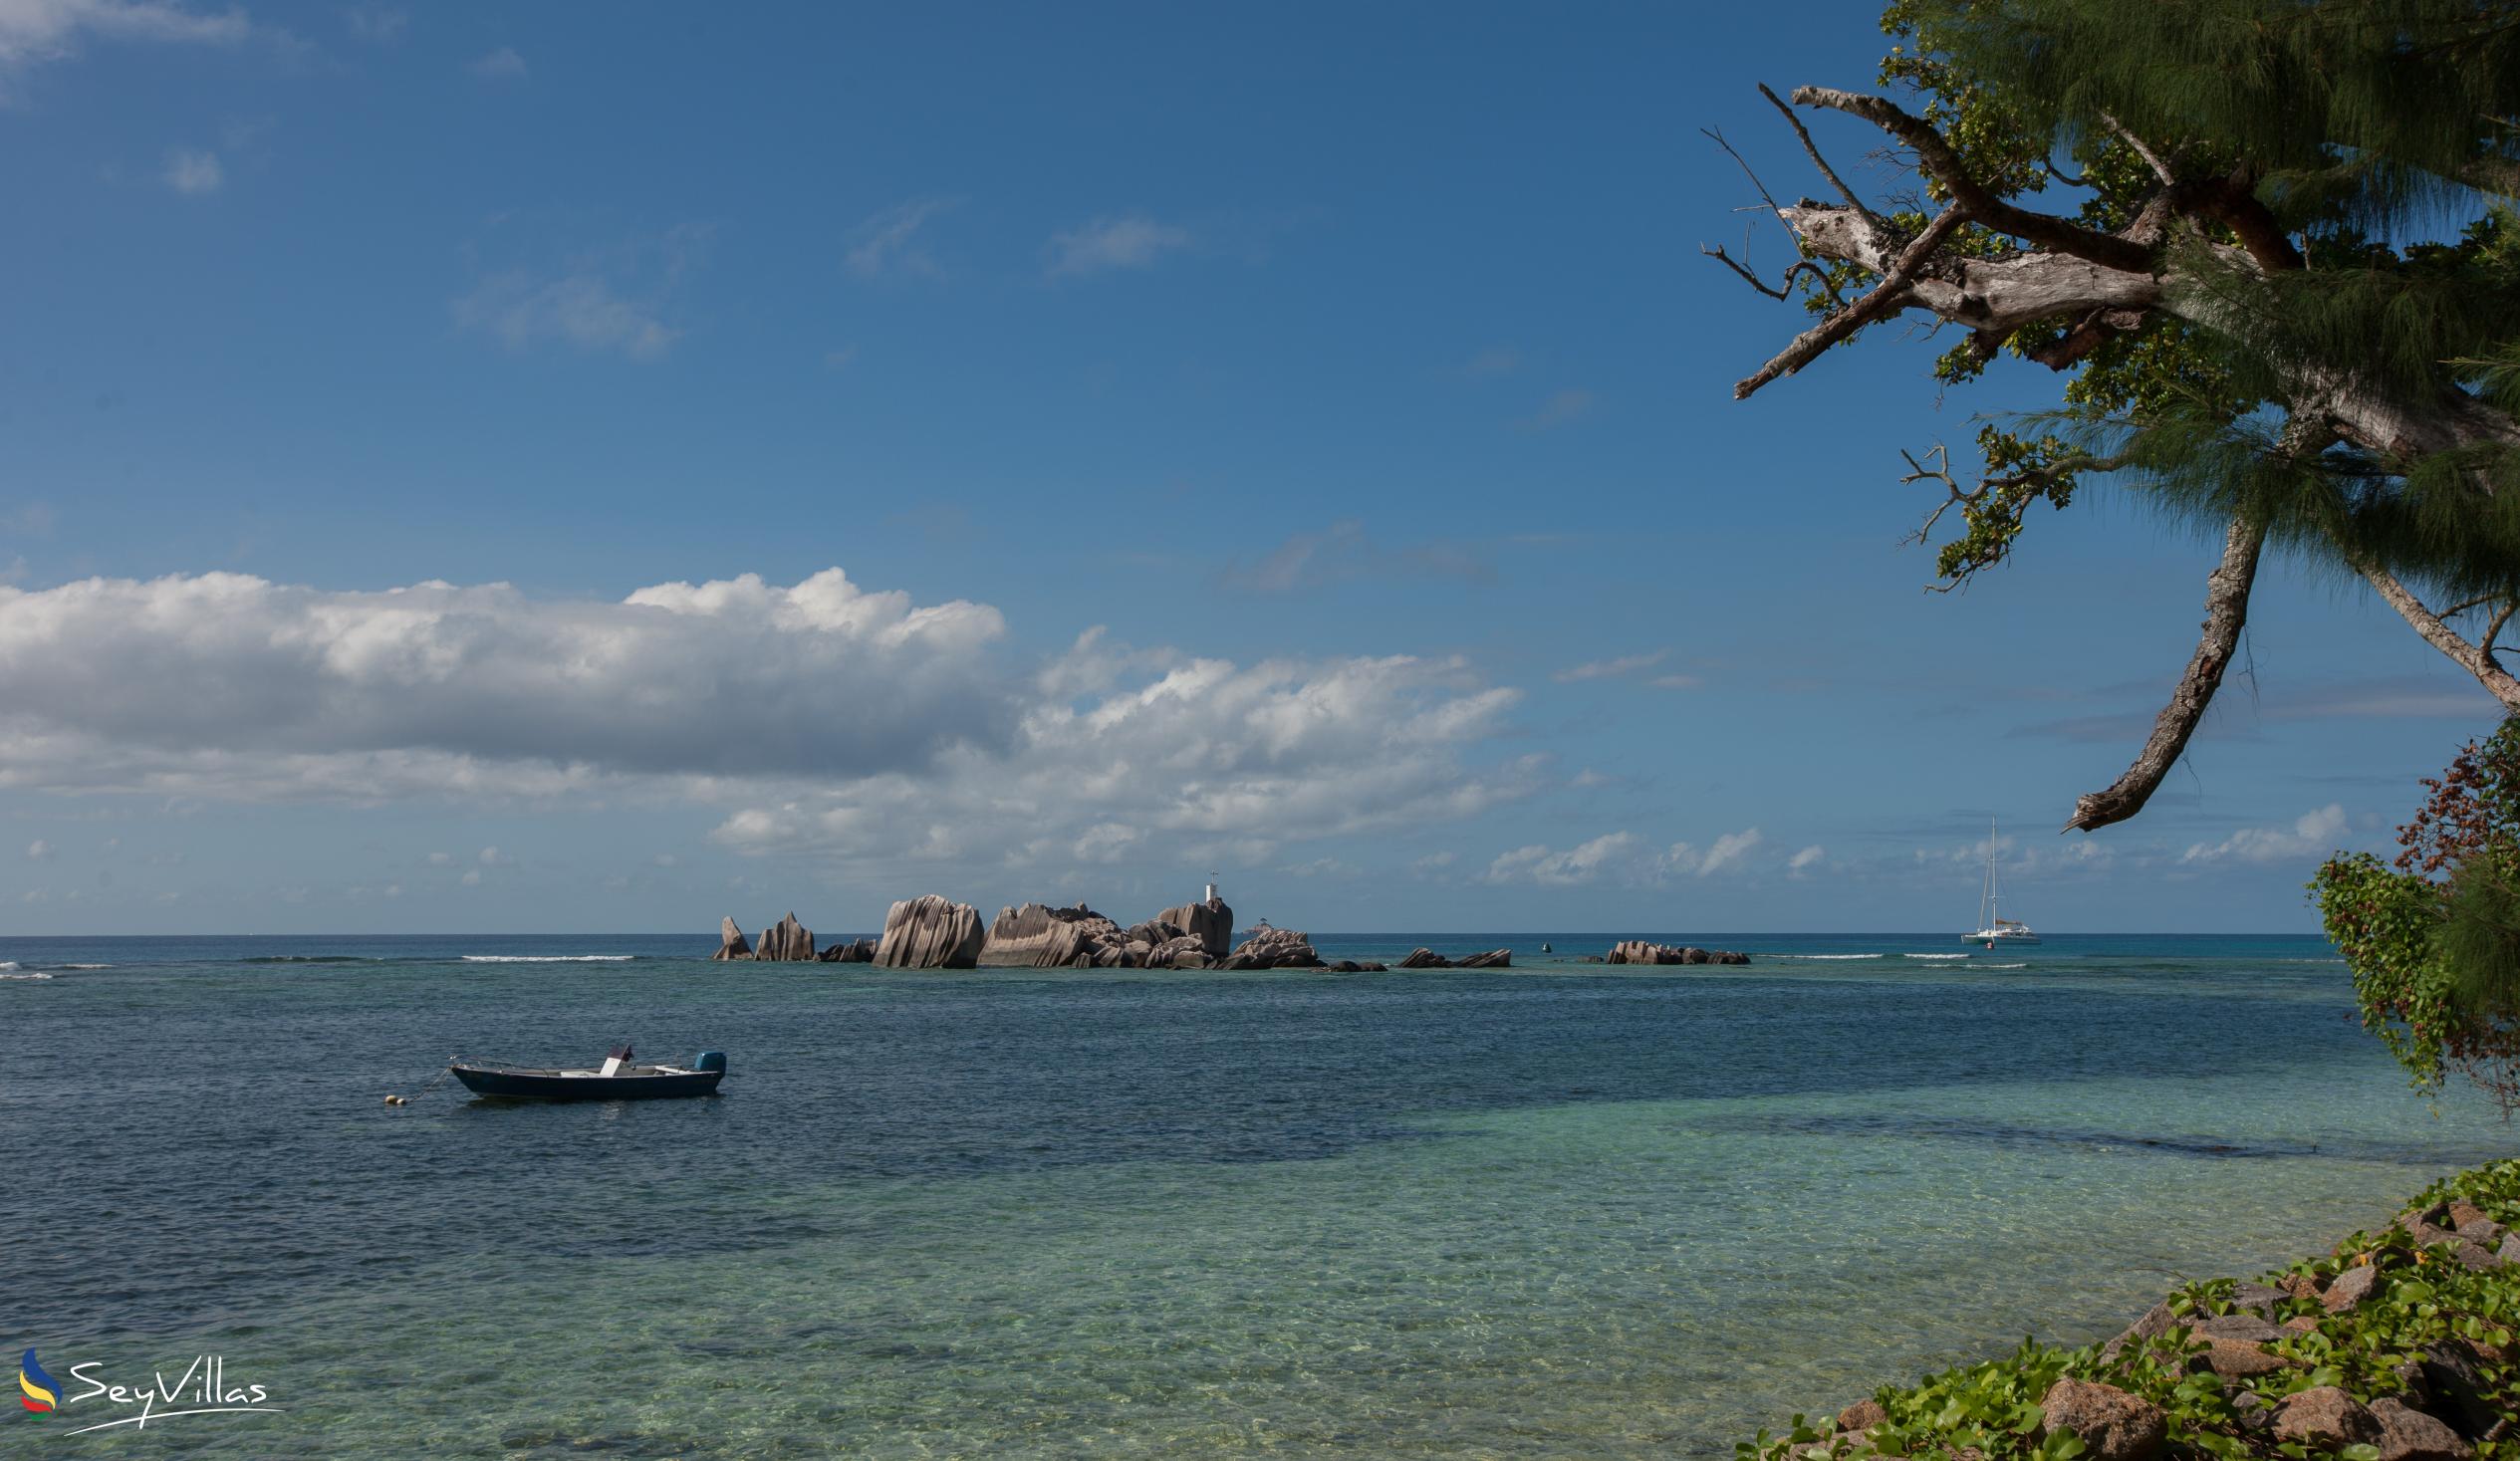 Foto 51: Villa Source D'Argent - Spiagge - La Digue (Seychelles)